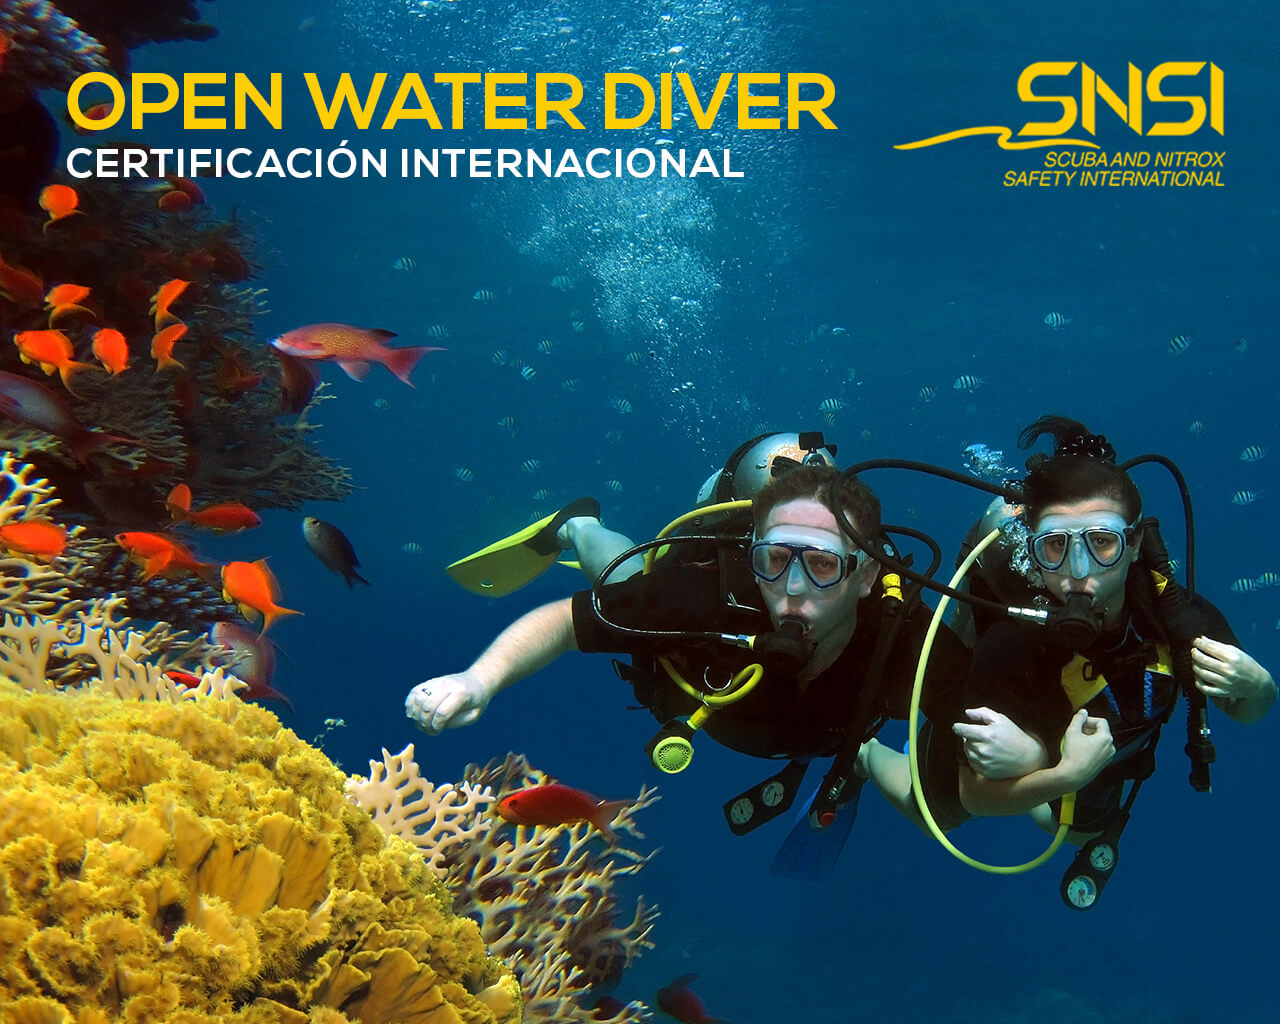 2curso open water diver con certificacion internacional snsi rec ecuador galapagos guayaquil